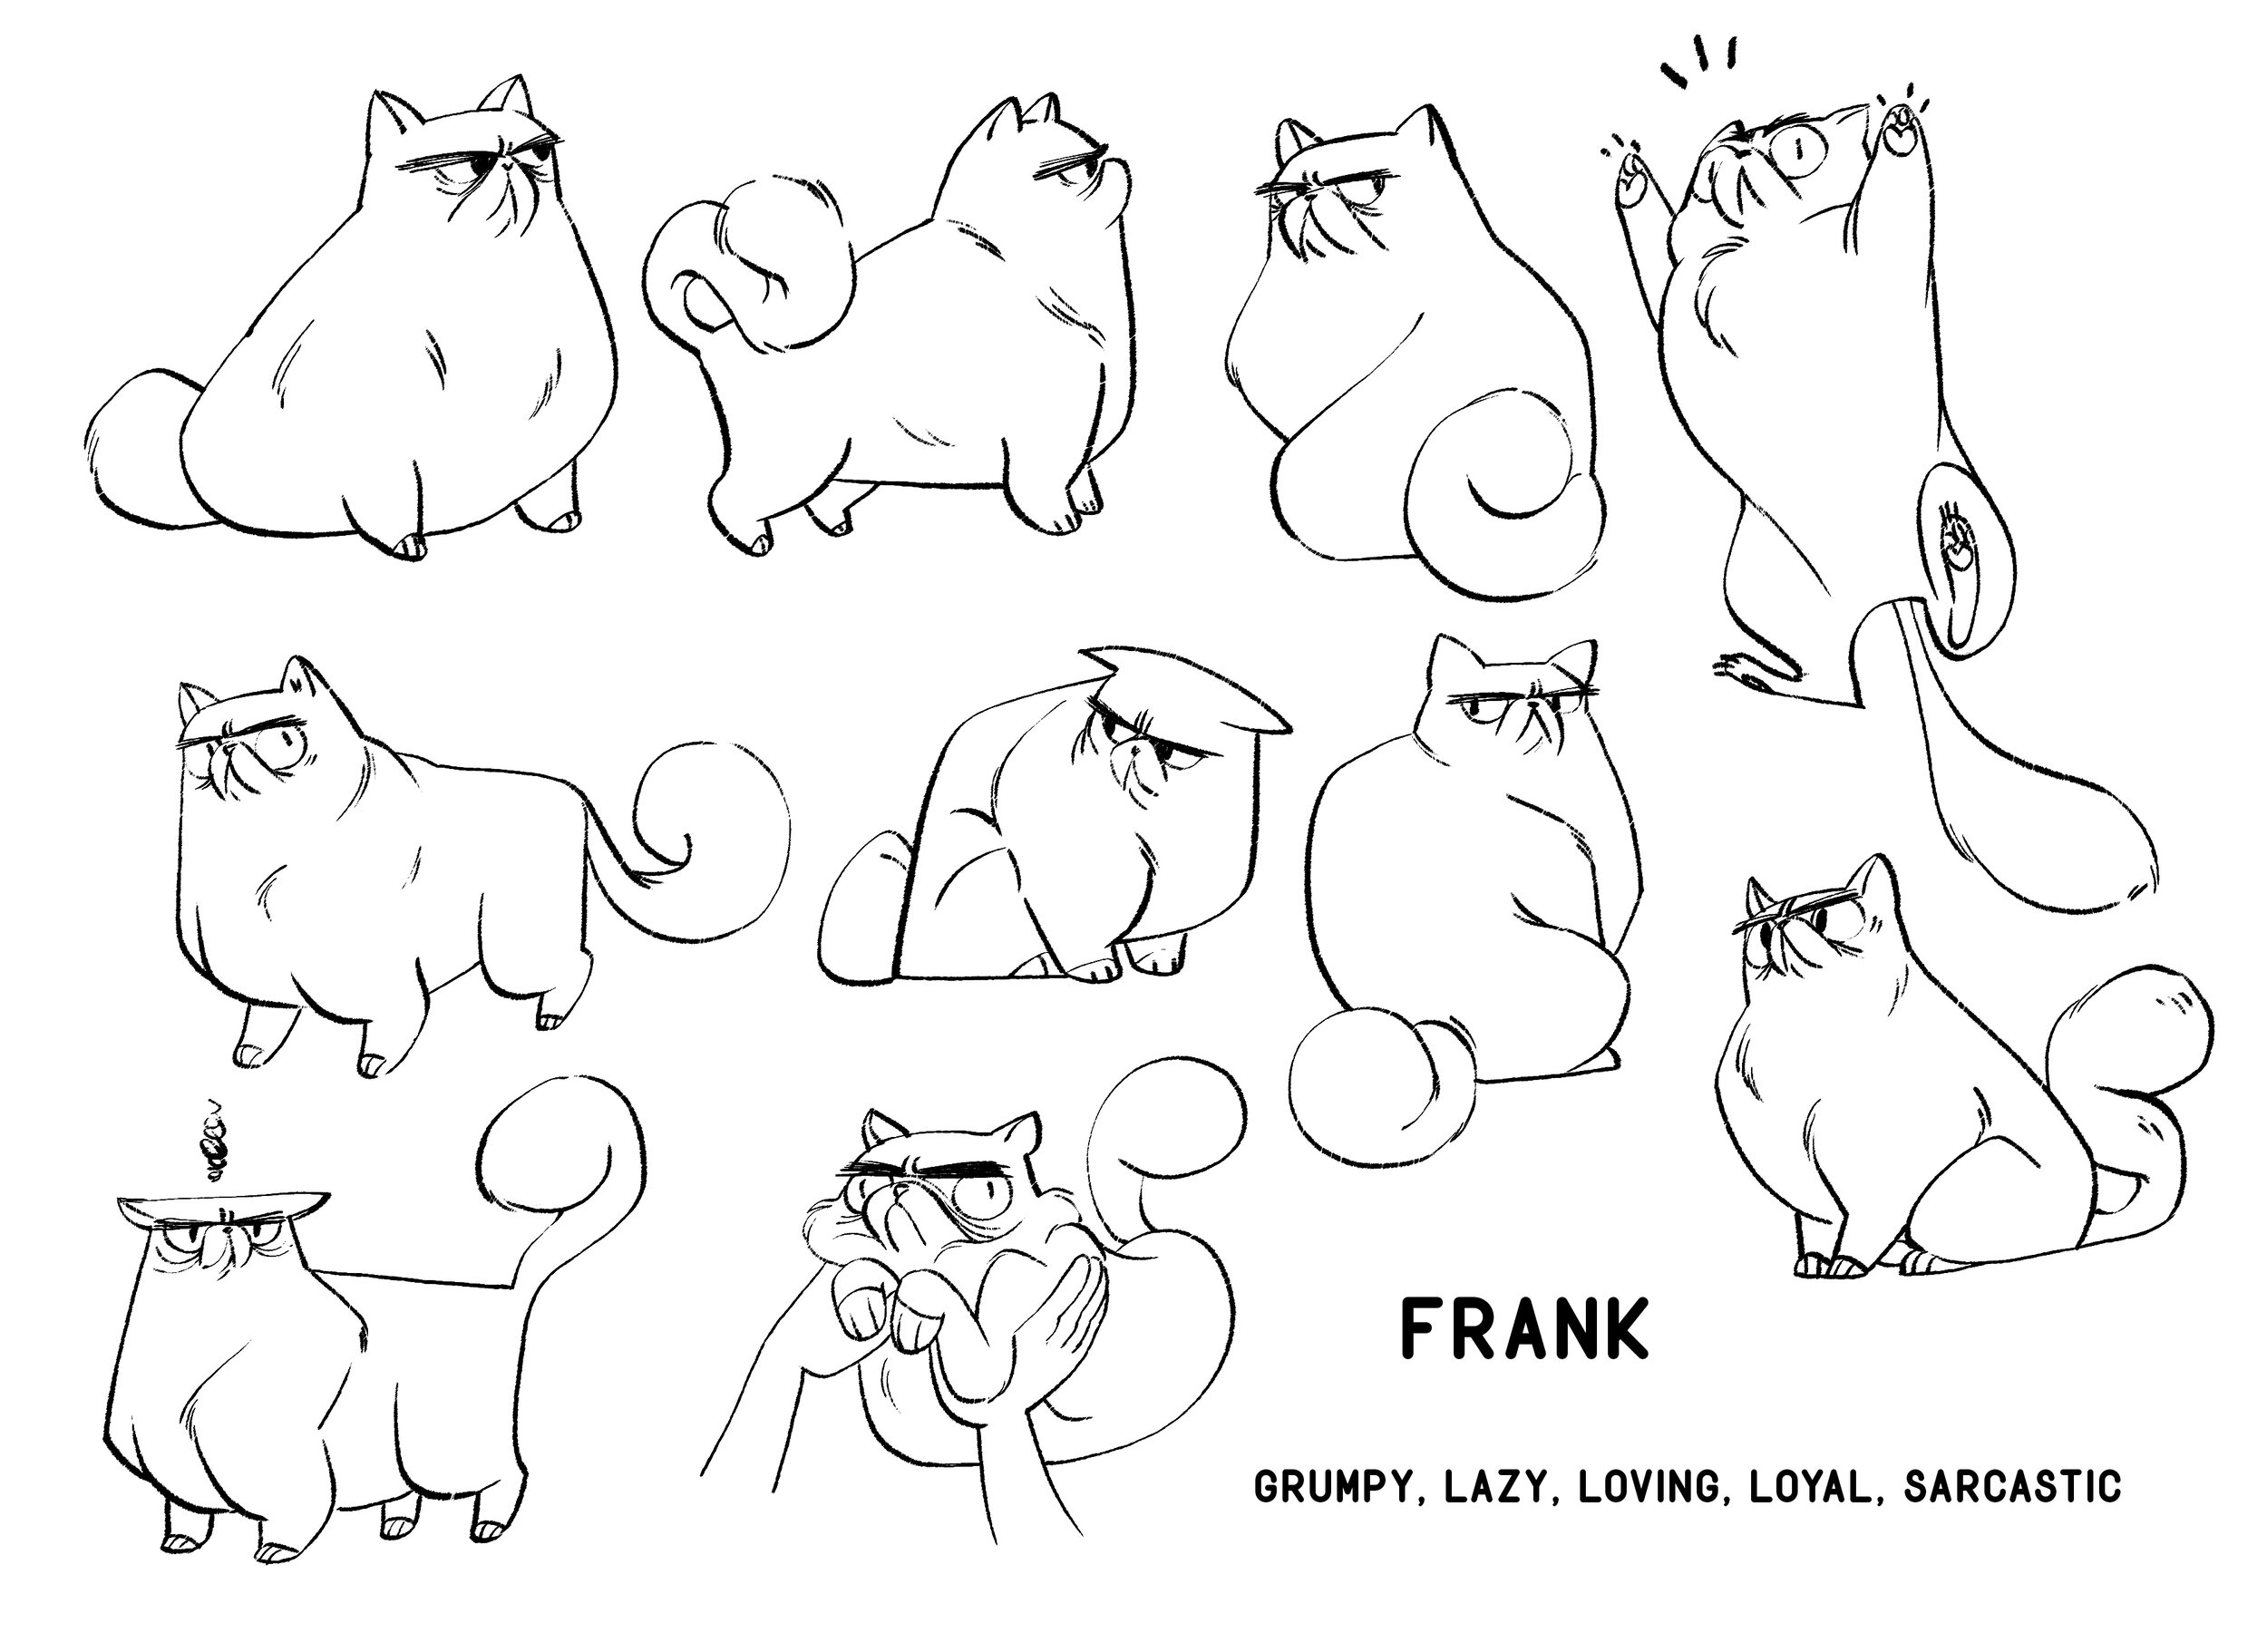 frank character design.jpg